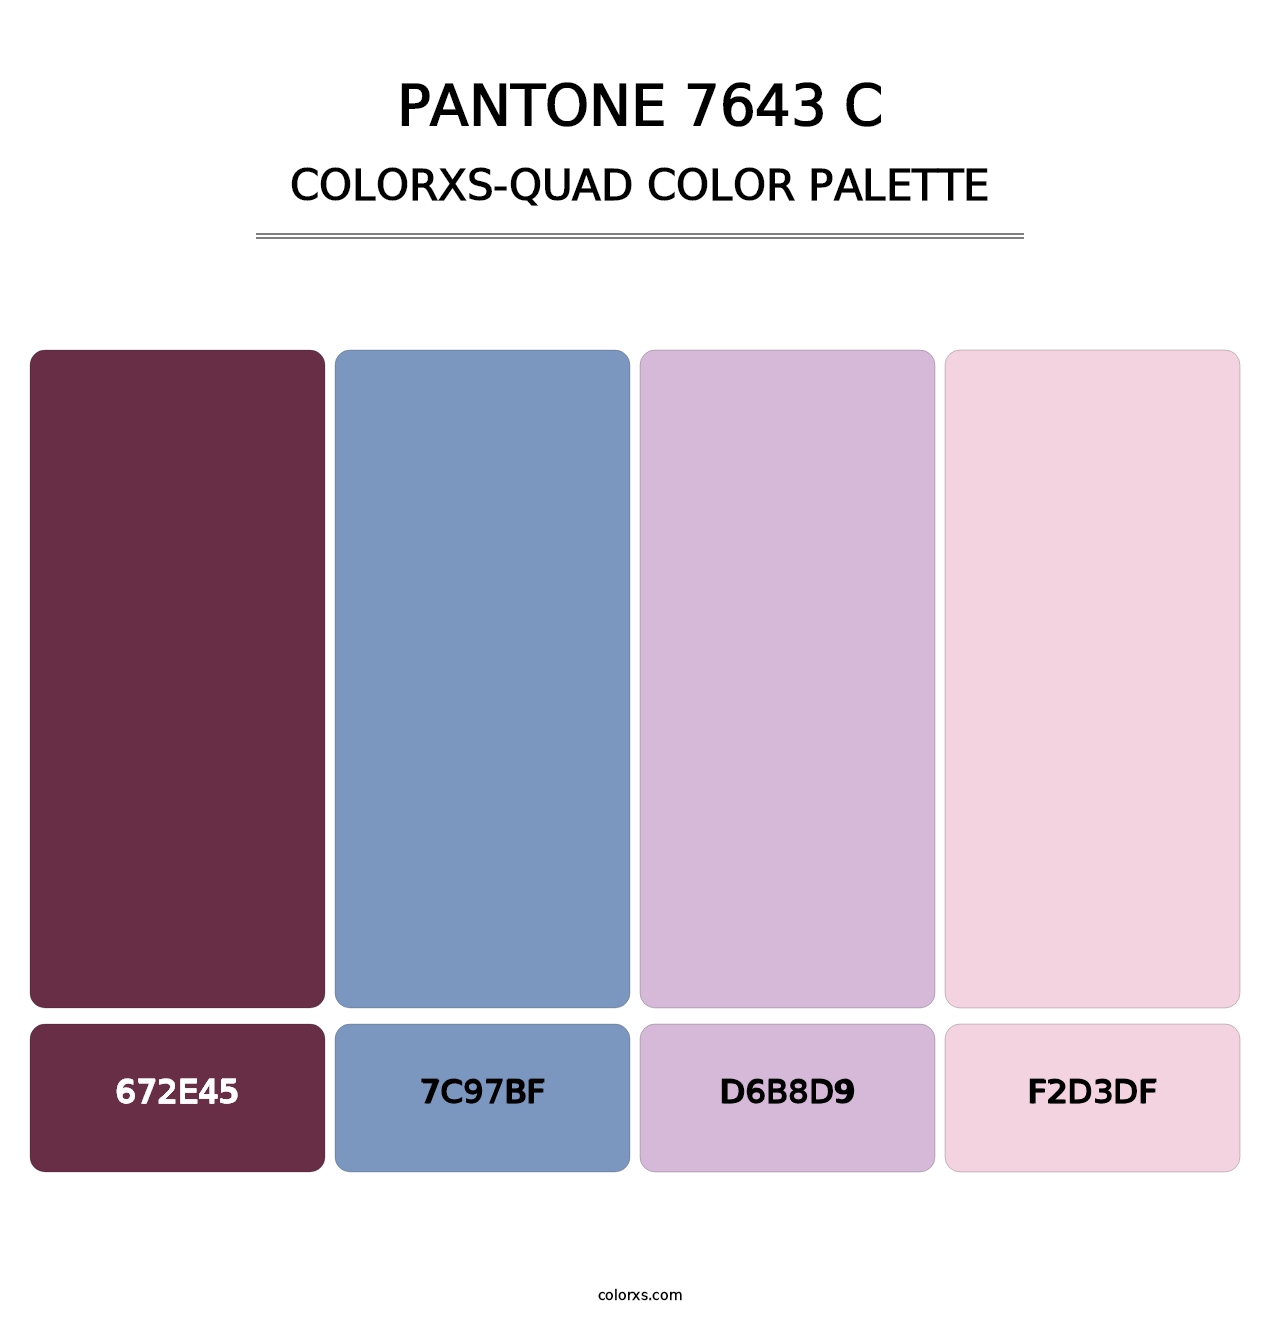 PANTONE 7643 C - Colorxs Quad Palette